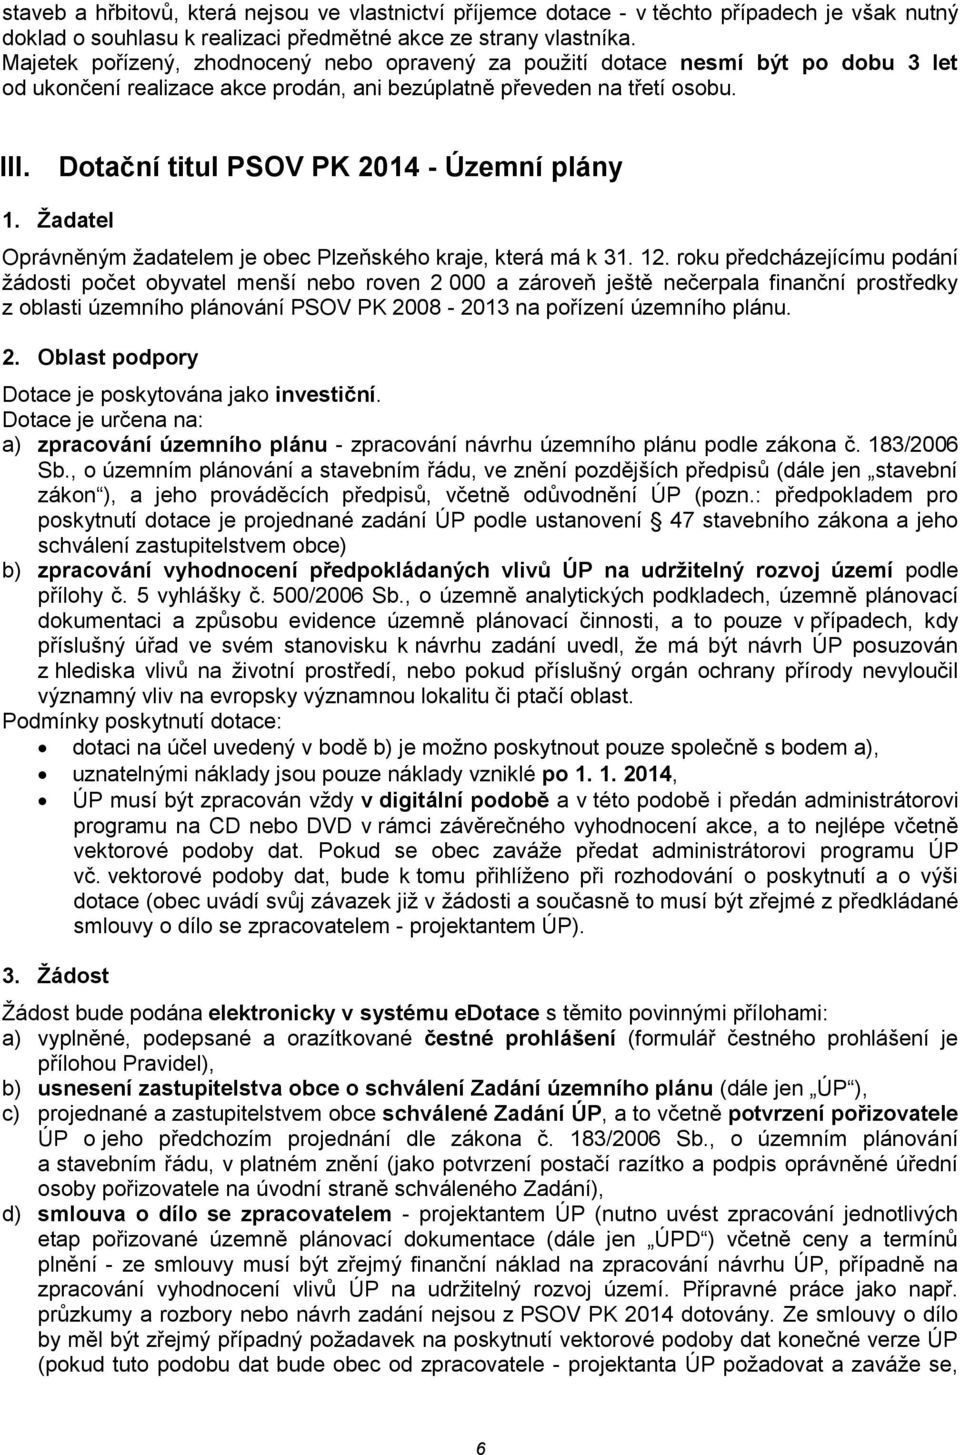 Dotační titul PSOV PK 2014 - Územní plány 1. Žadatel Oprávněným žadatelem je obec Plzeňského kraje, která má k 31. 12.